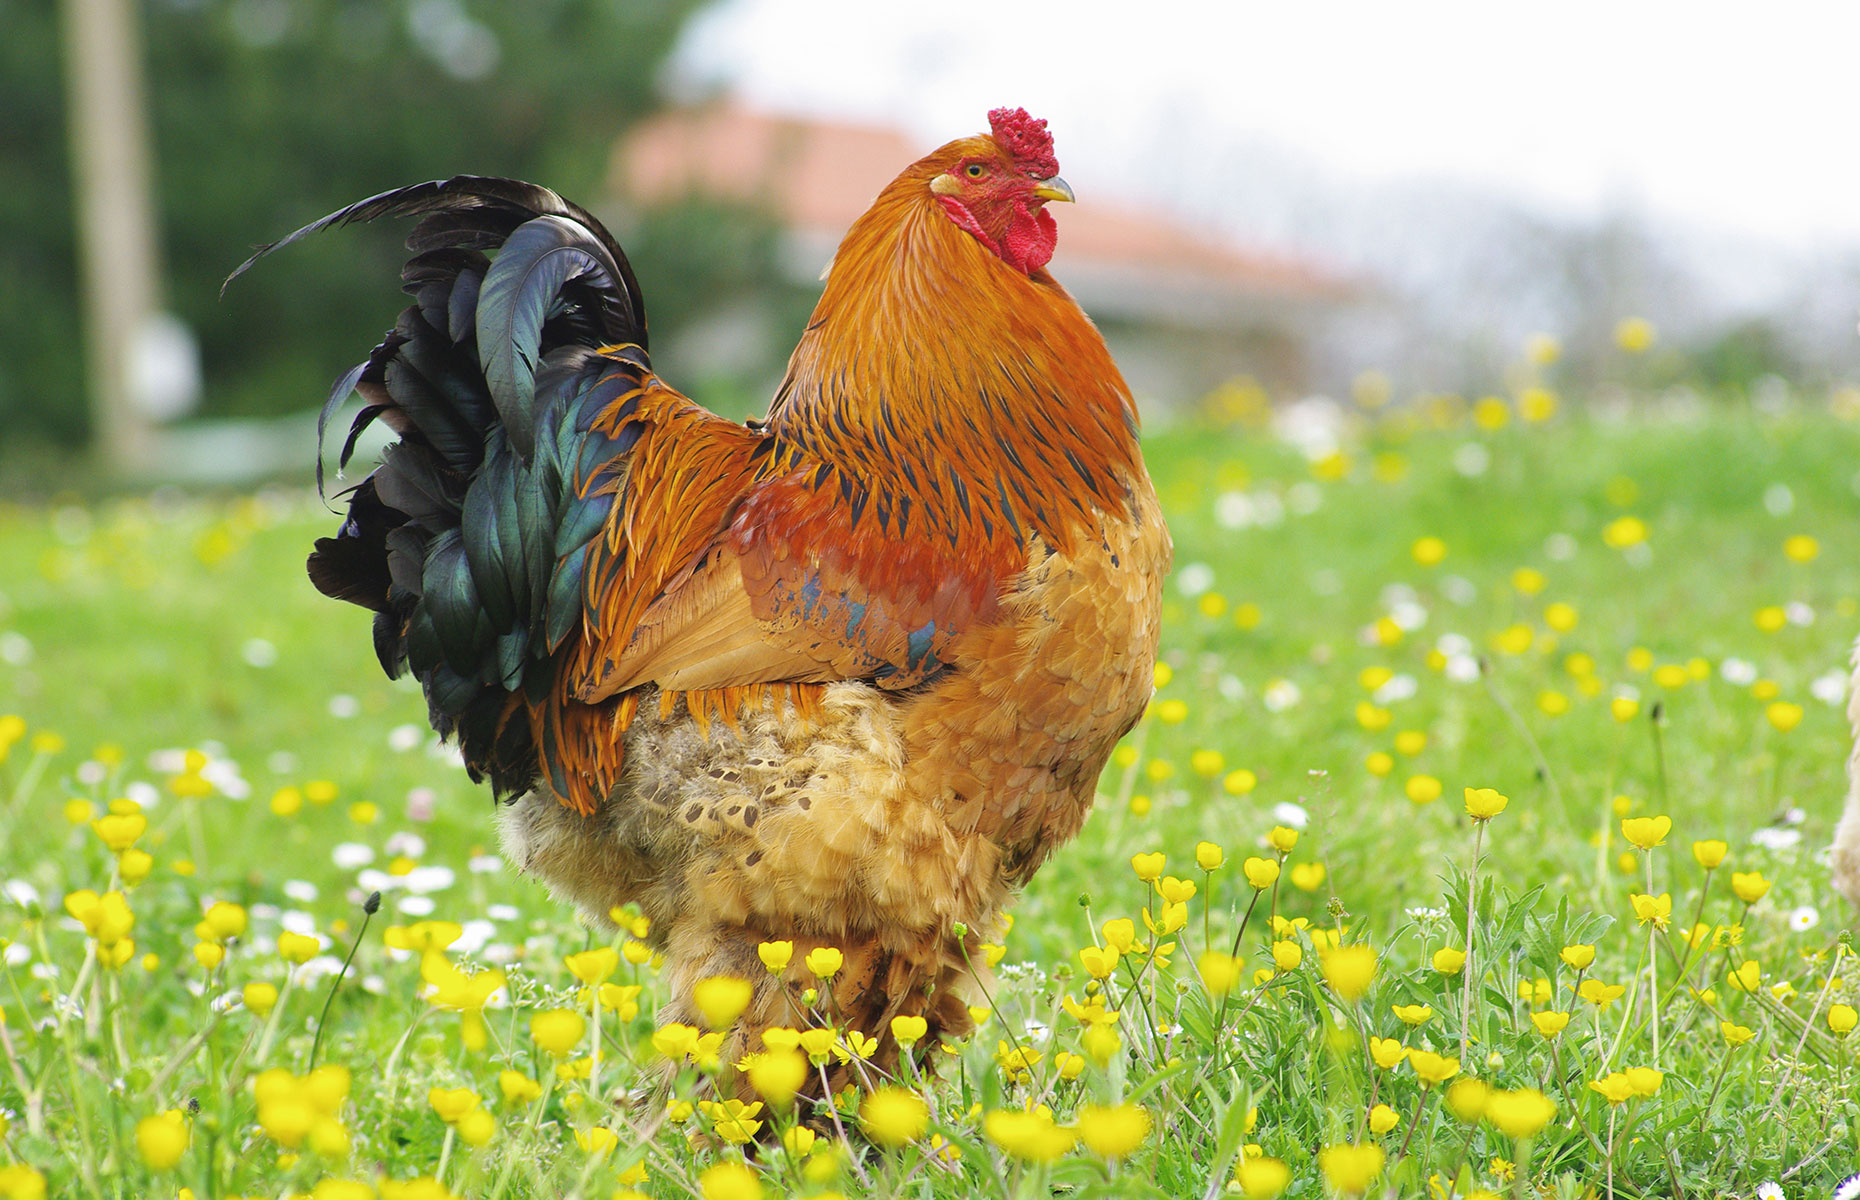 A brahma chicken, breed type (Image: Patri Sierra/Shutterstock)